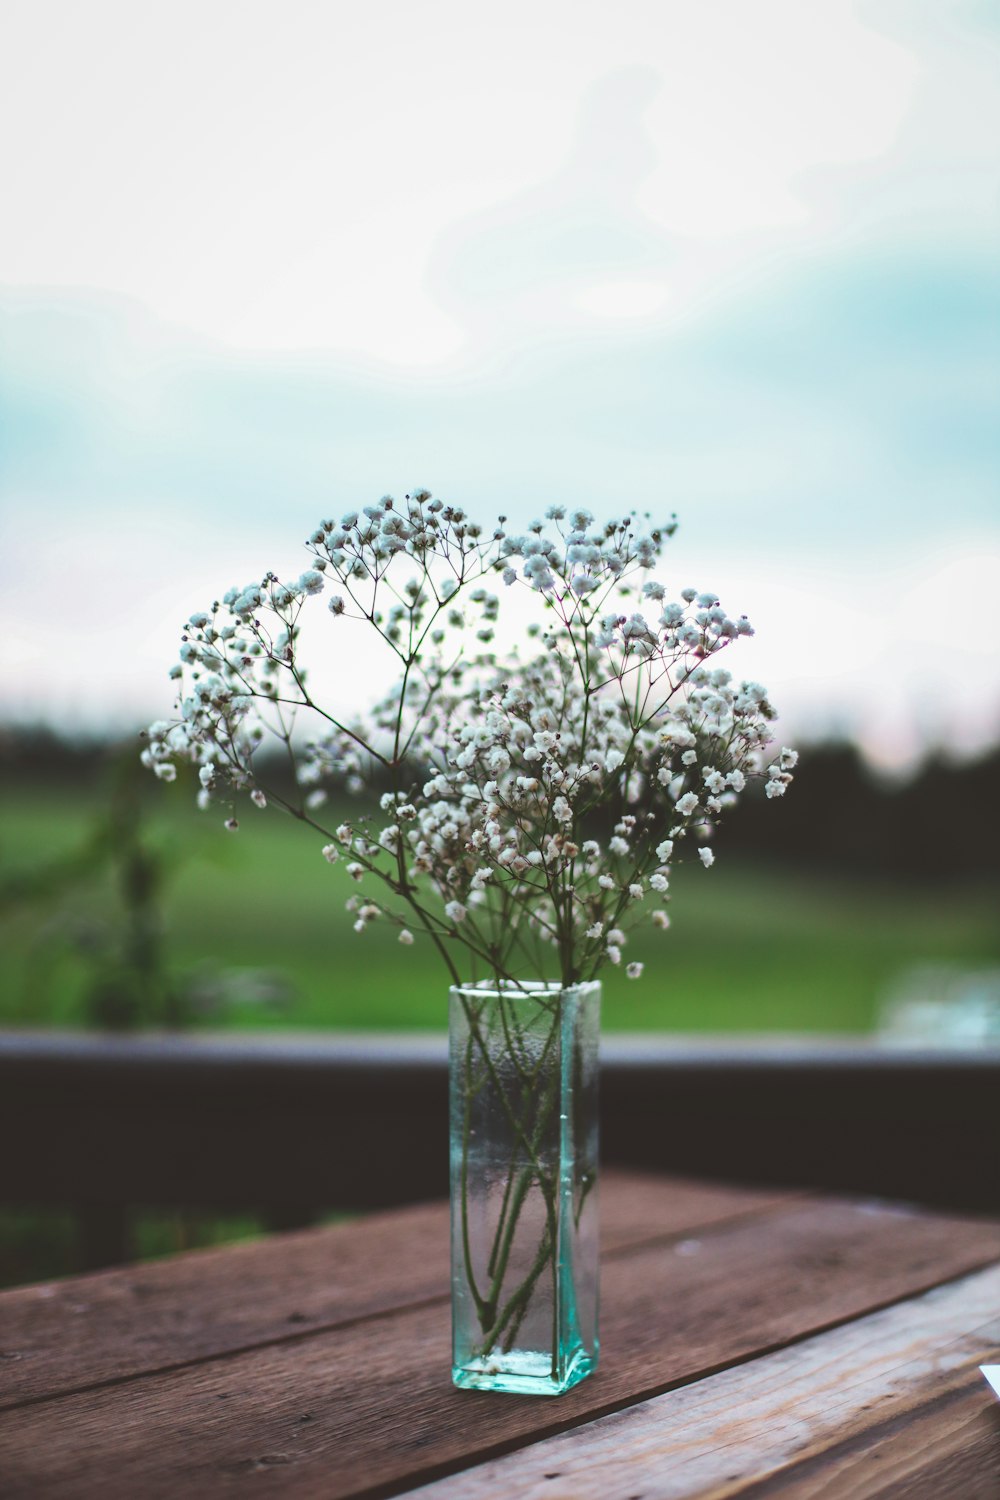 透明なガラスの花瓶に白い花